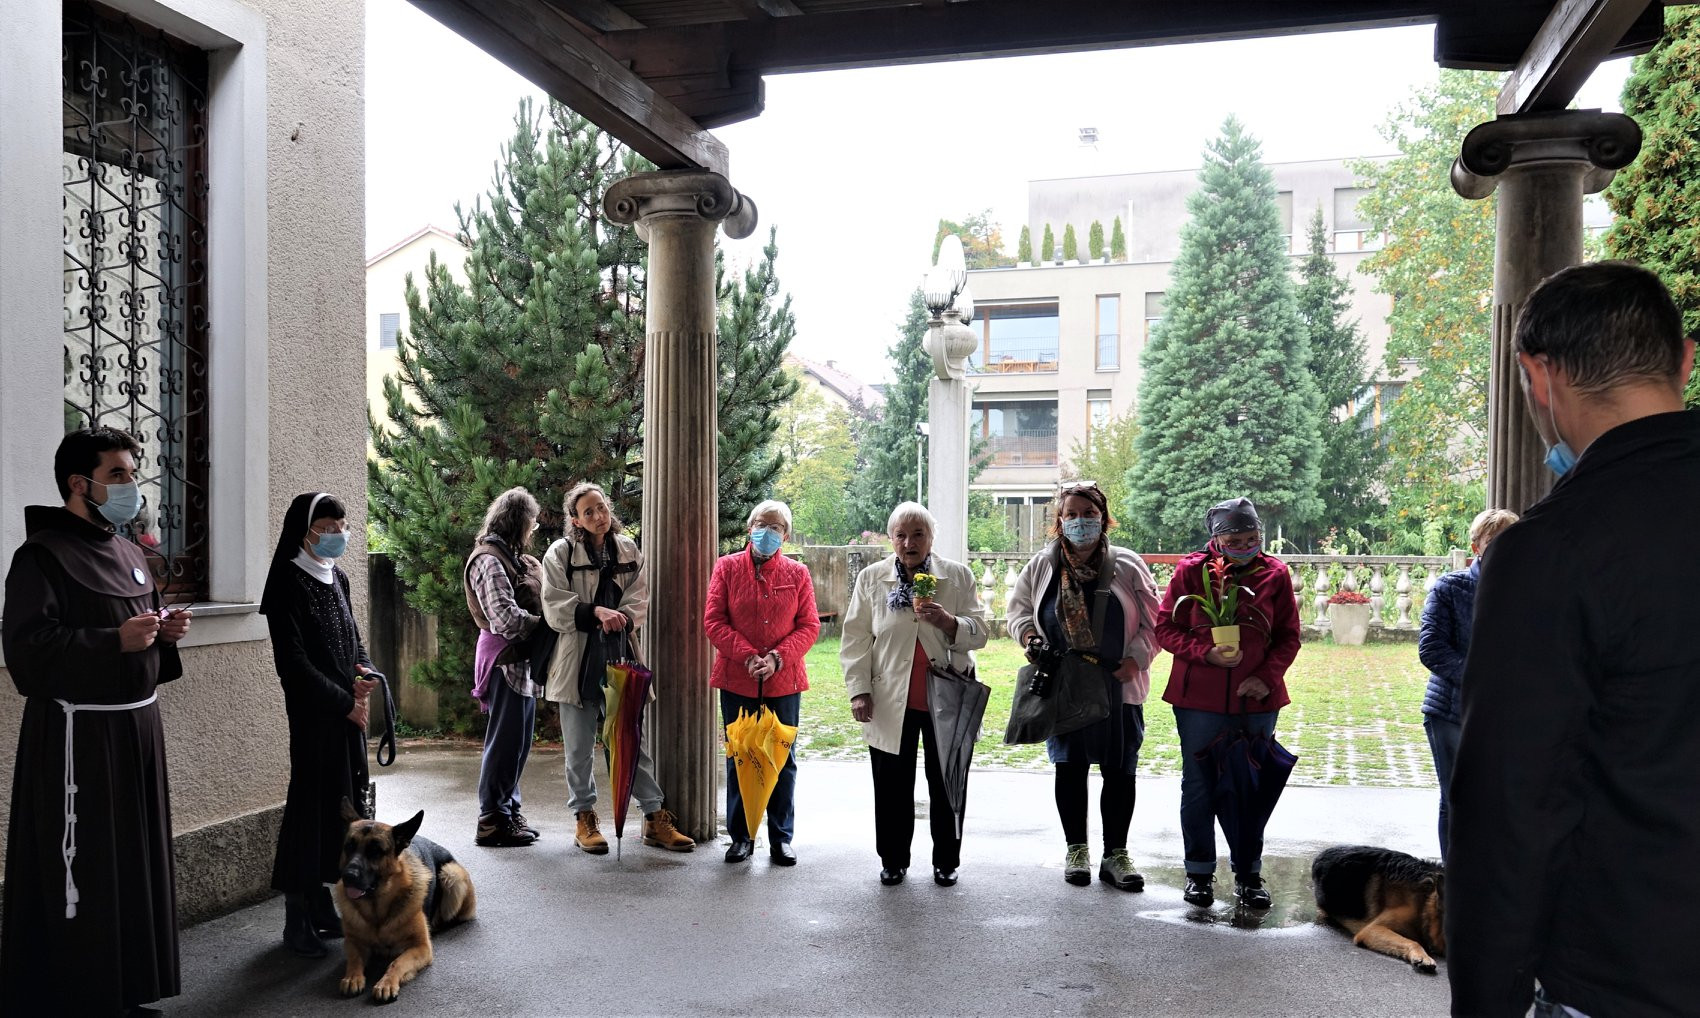 Blagoslov živali in rastlin ob godu sv. Frančiška Asiškega na samostanskem dvorišču v Šiški